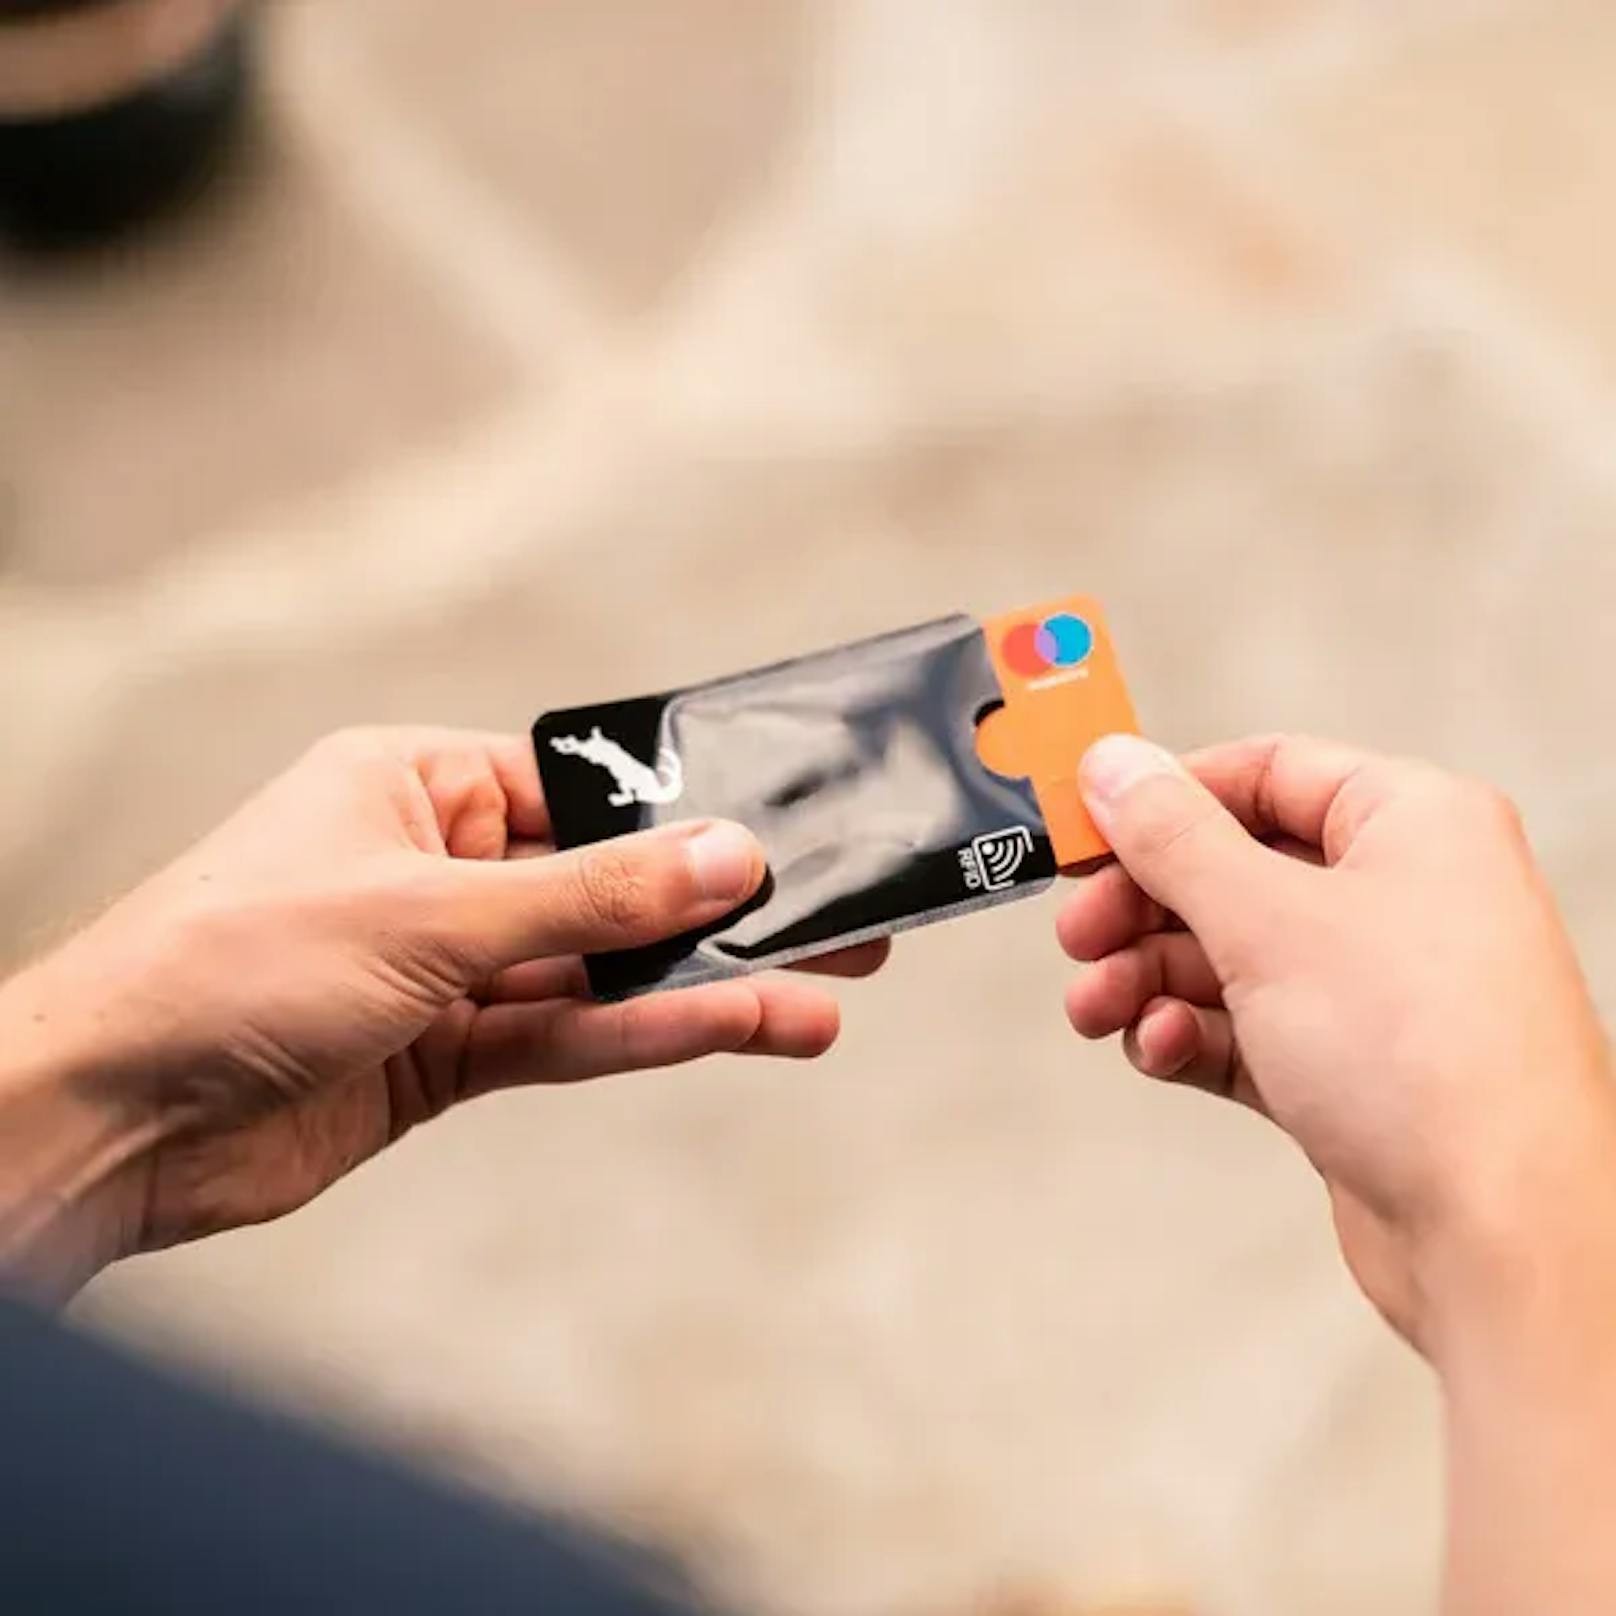 Schutzhüllen mit NFC & RFID Technologie erlauben dir deine Daten zu teilen, ohne die eigentlichen Karten und Dokumente aus der Tasche zu nehmen. So bleiben zum Beispiel Reisepass und Kreditkarten geschützt im Geldbeutel.